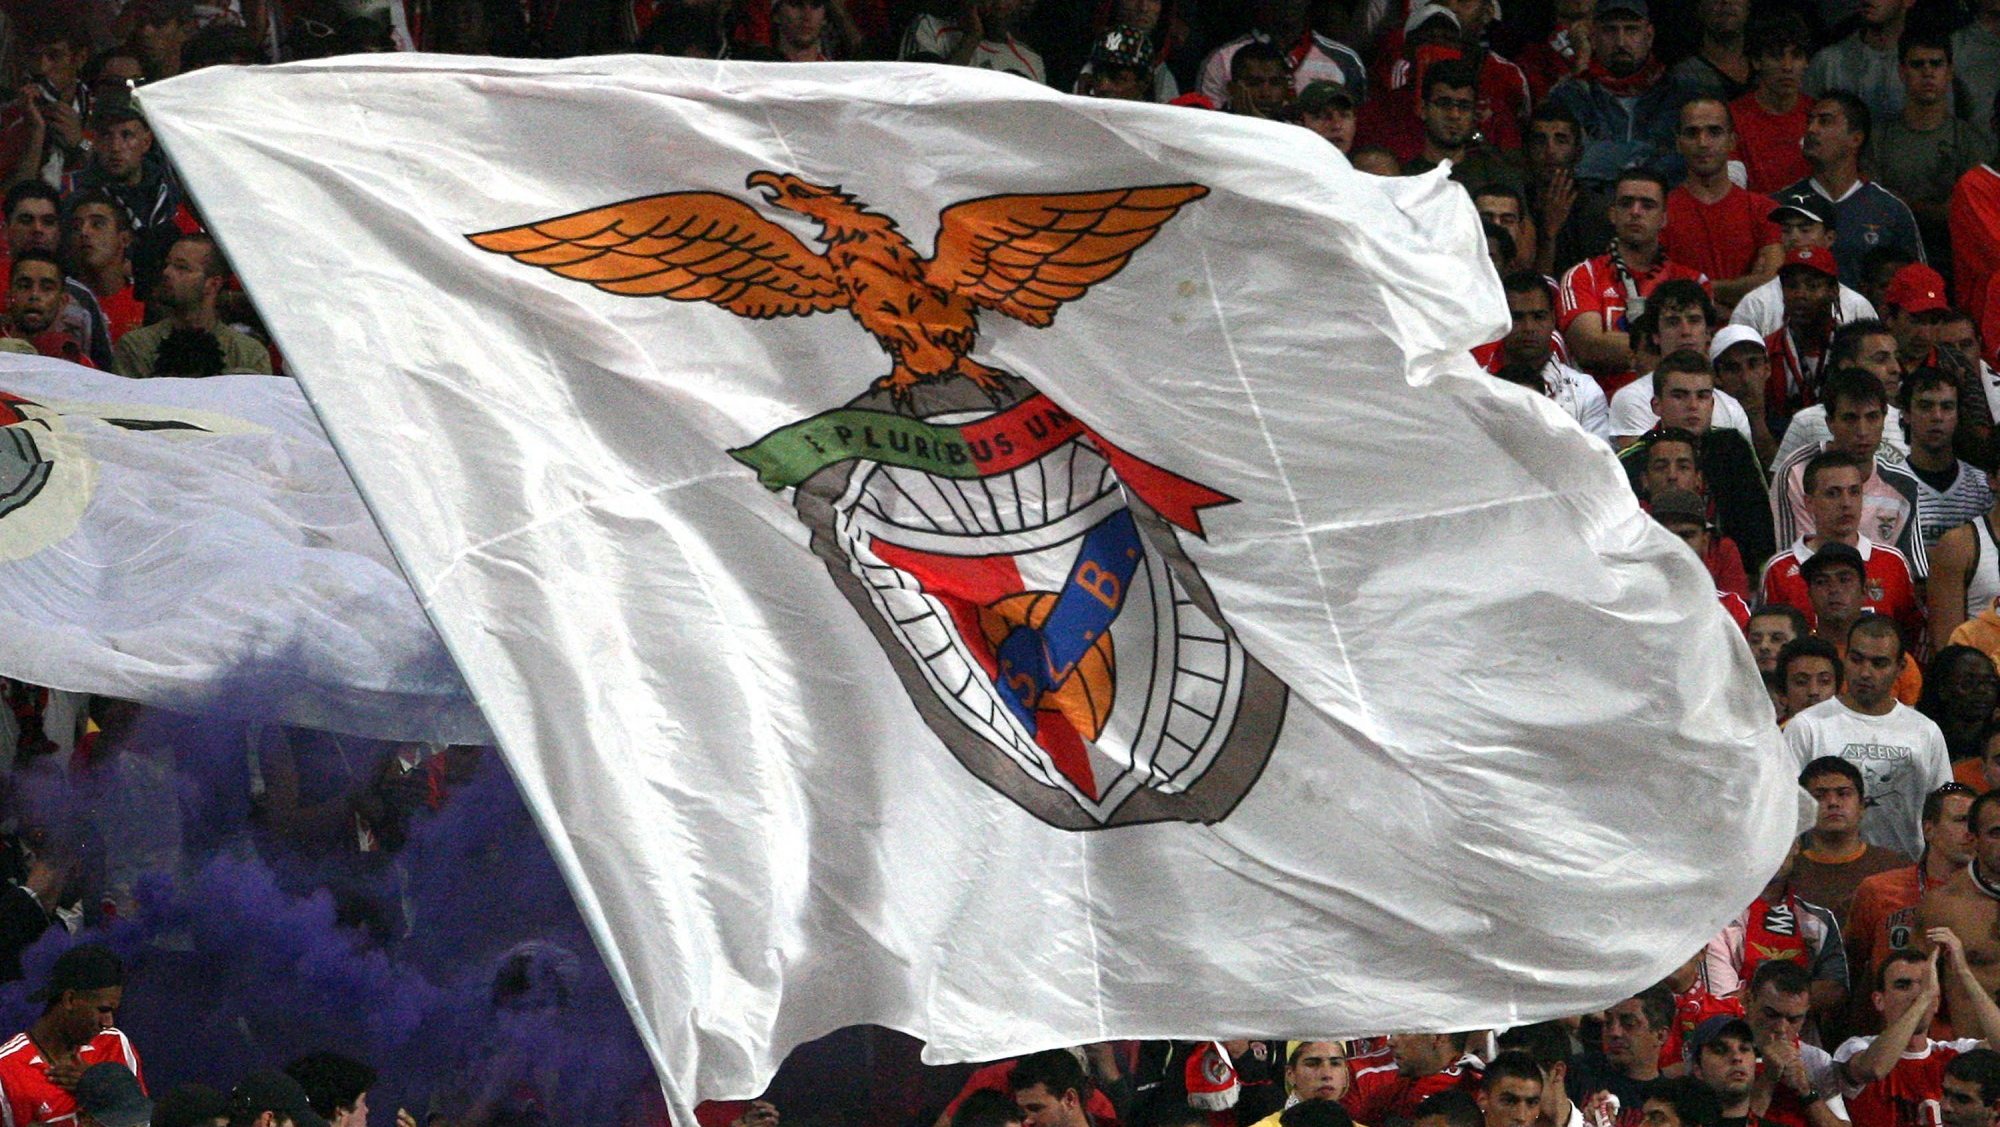 Caso ultrapasse o play-off, o Benfica juntar-se-á ao campeão nacional FC Porto e ao vice Sporting, que tiveram entrada direta na fase de grupos